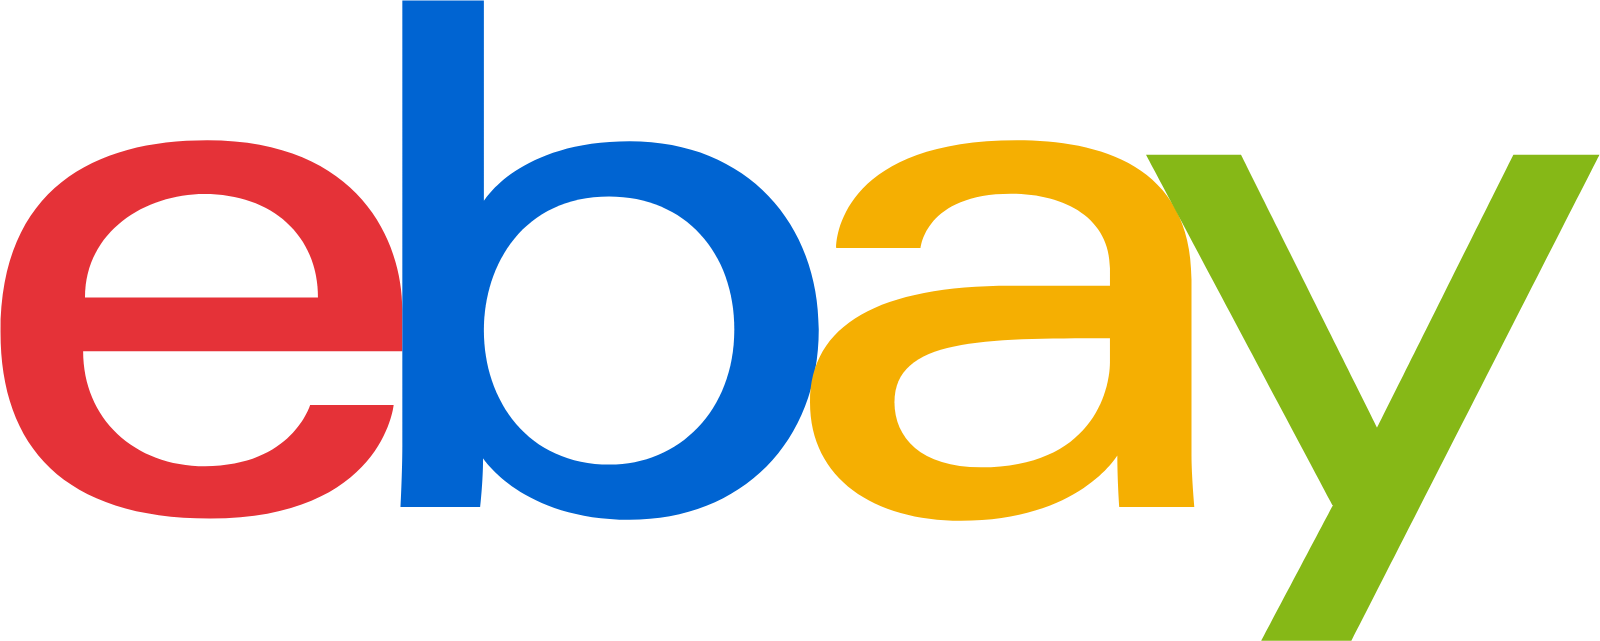 eBay logo (PNG transparent)